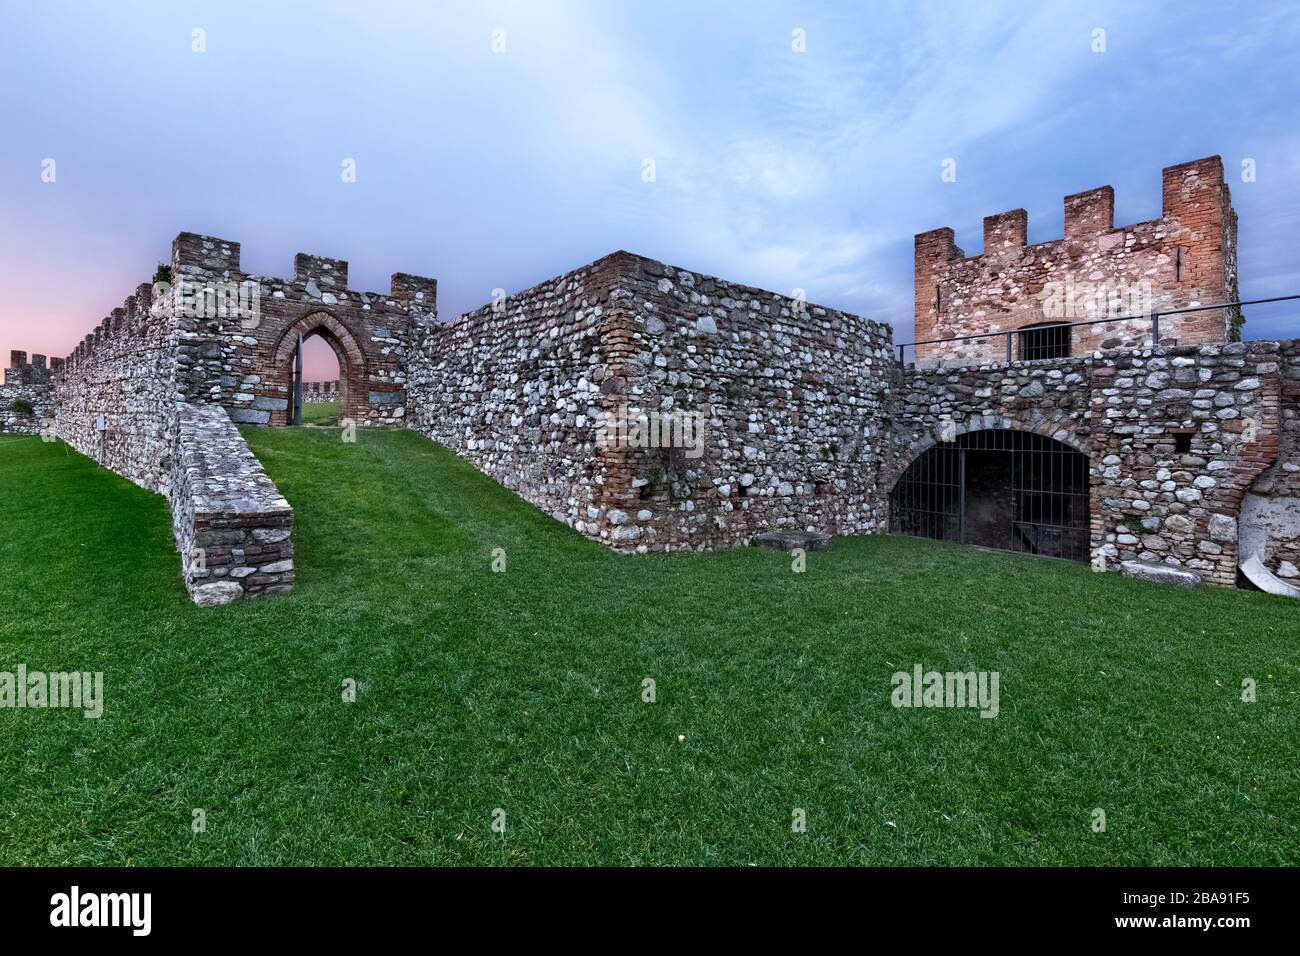 Medieval walls and towers of the Rocca di Lonato. Lonato del Garda, Brescia province, Lombardy, Italy, Europe. Stock Photo